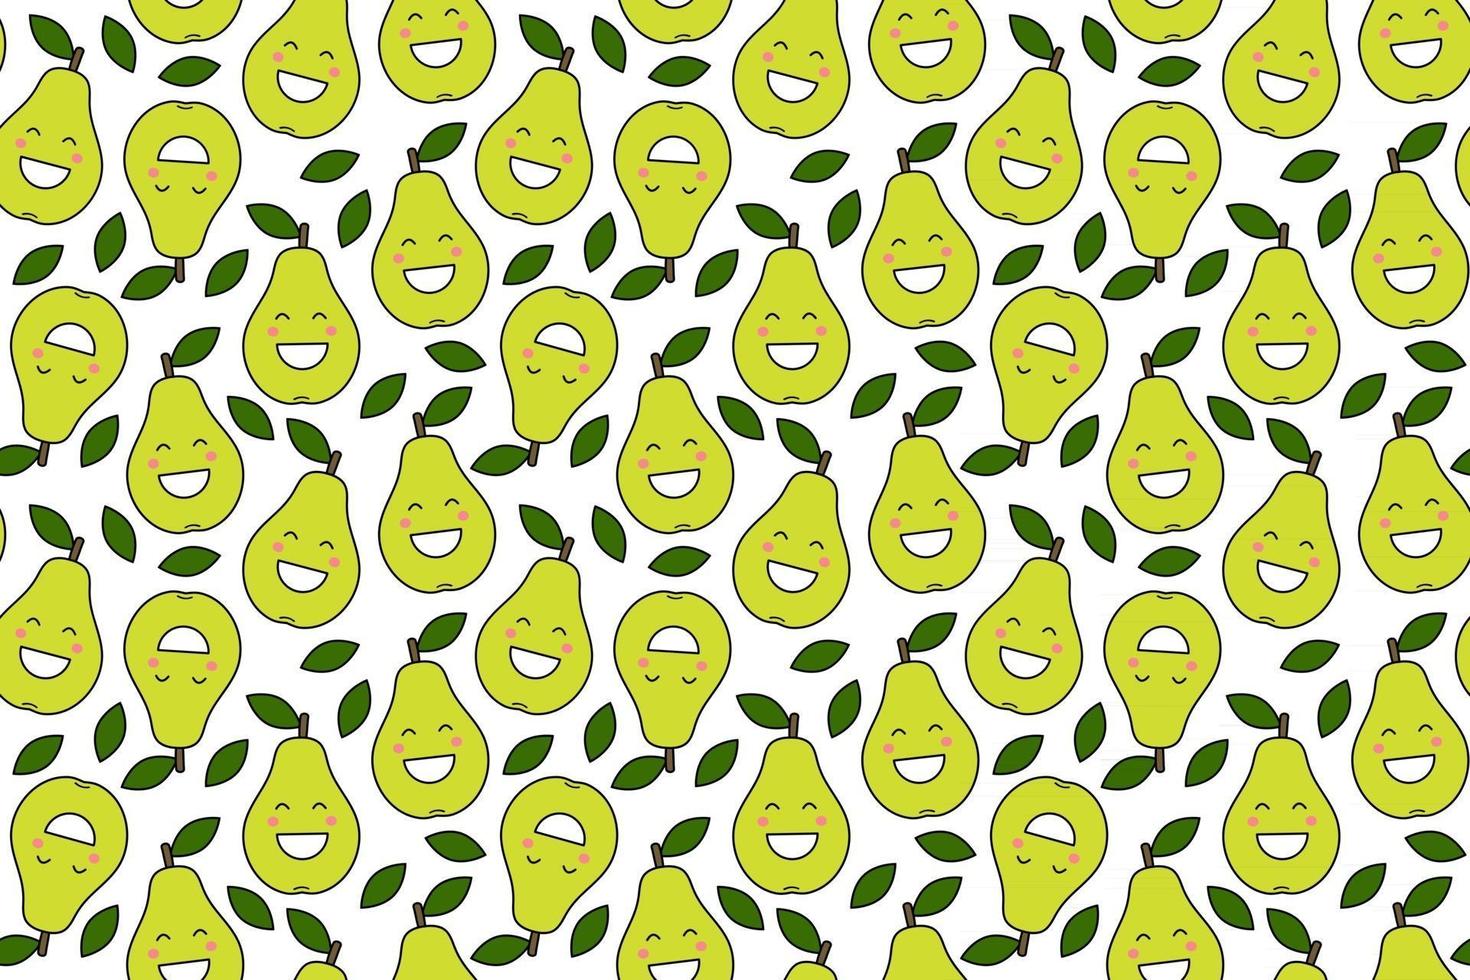 glückliche kawaii Früchte druckt für Kinder süßes nahtloses Muster mit Smiley-Birnen im Cartoon-Stil vektor